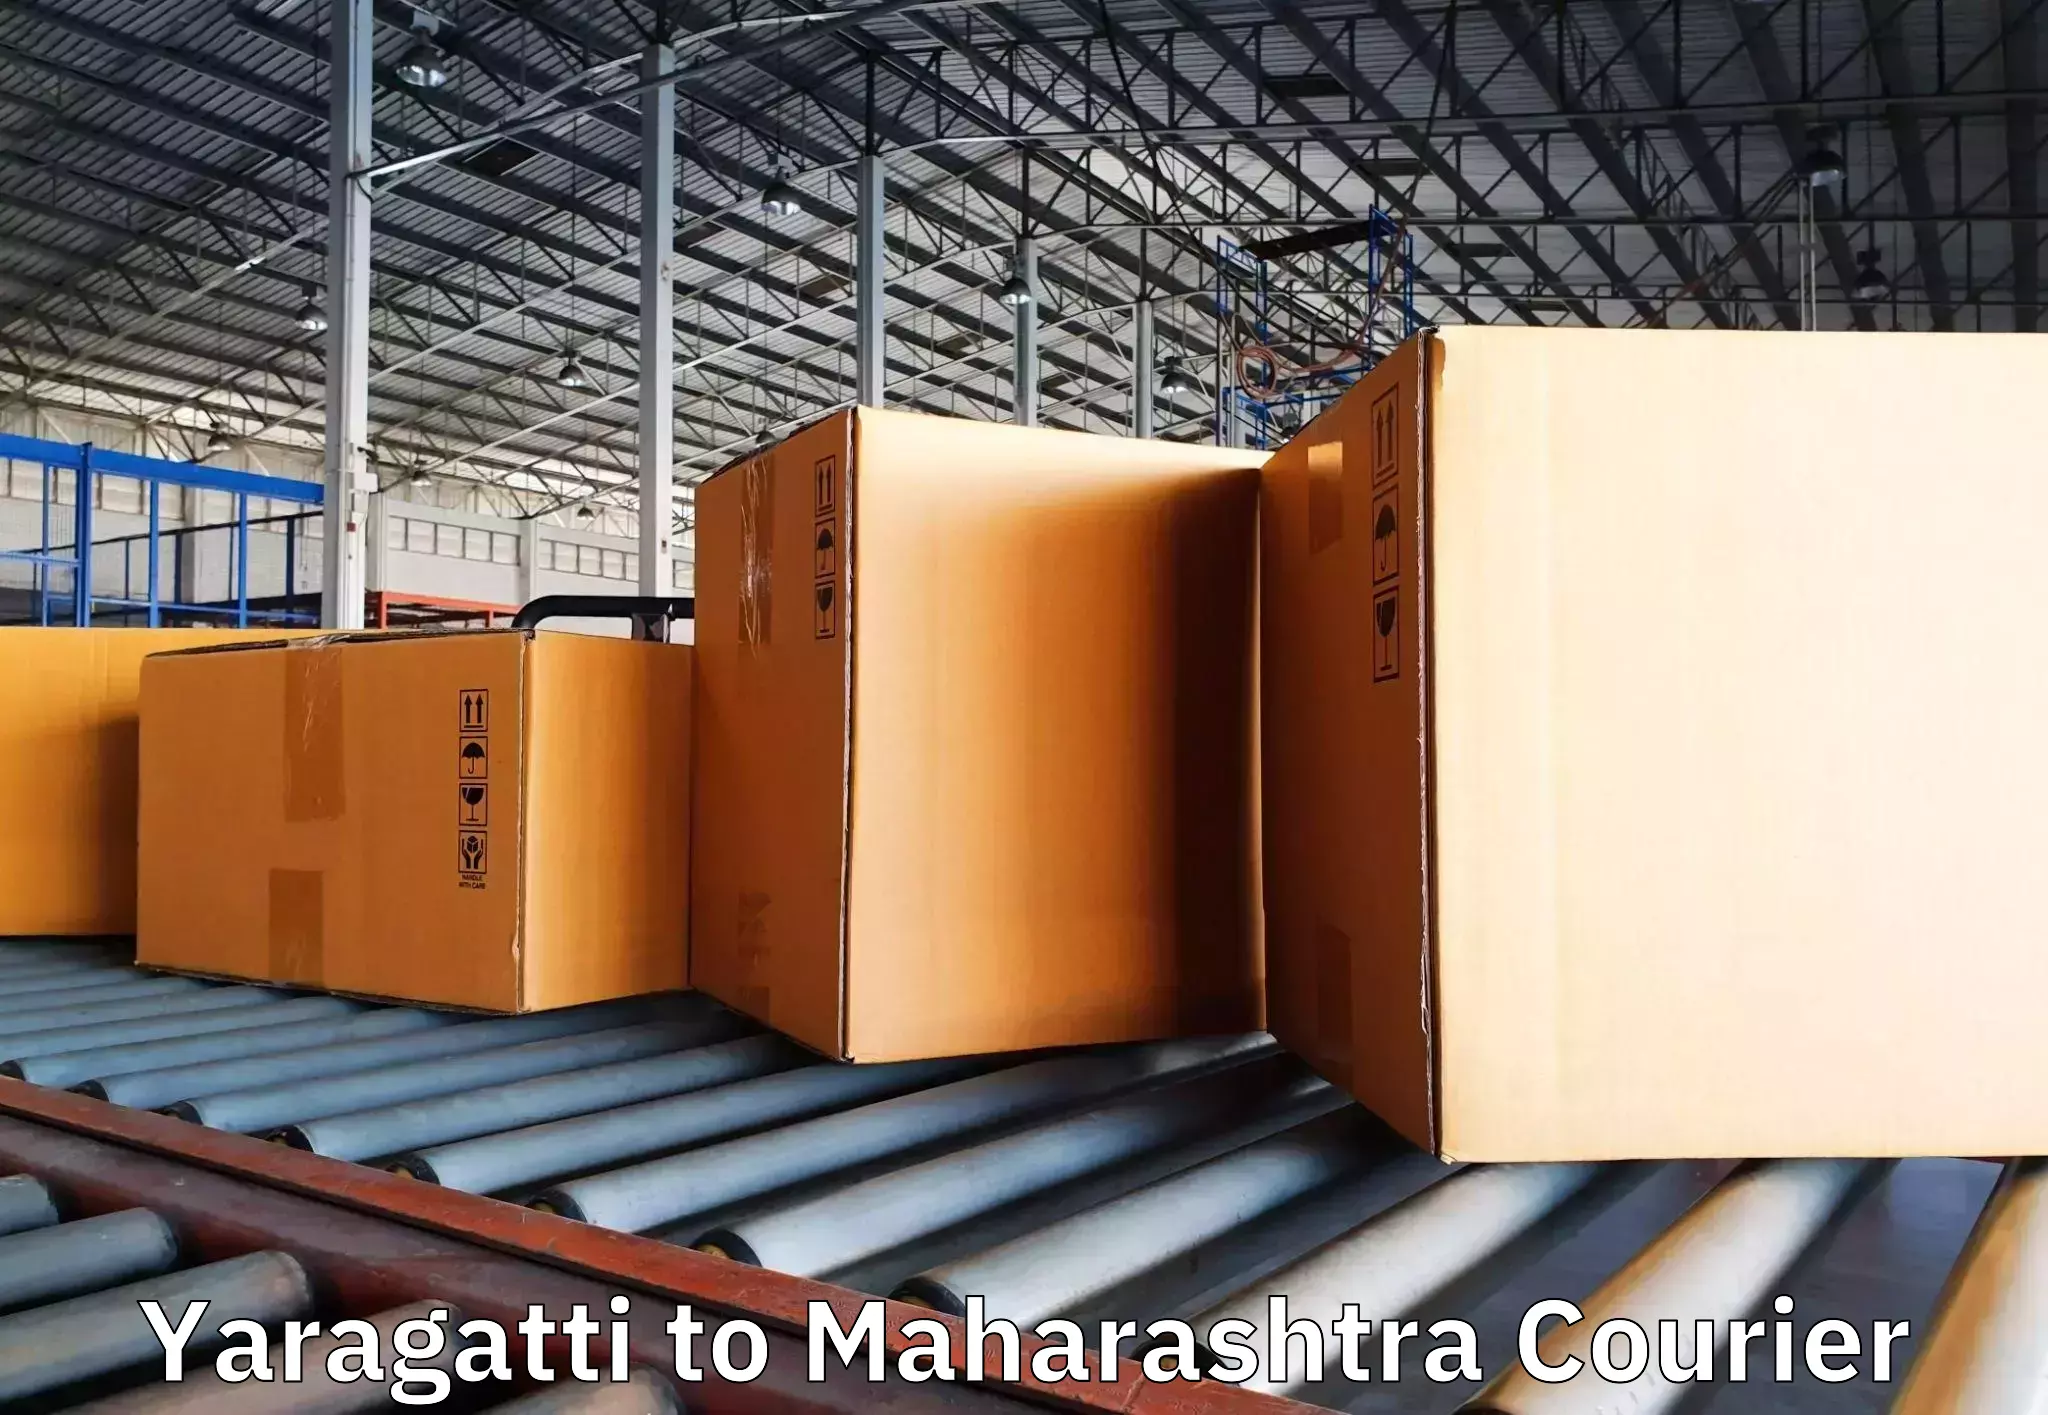 Budget-friendly movers Yaragatti to Ambarnath